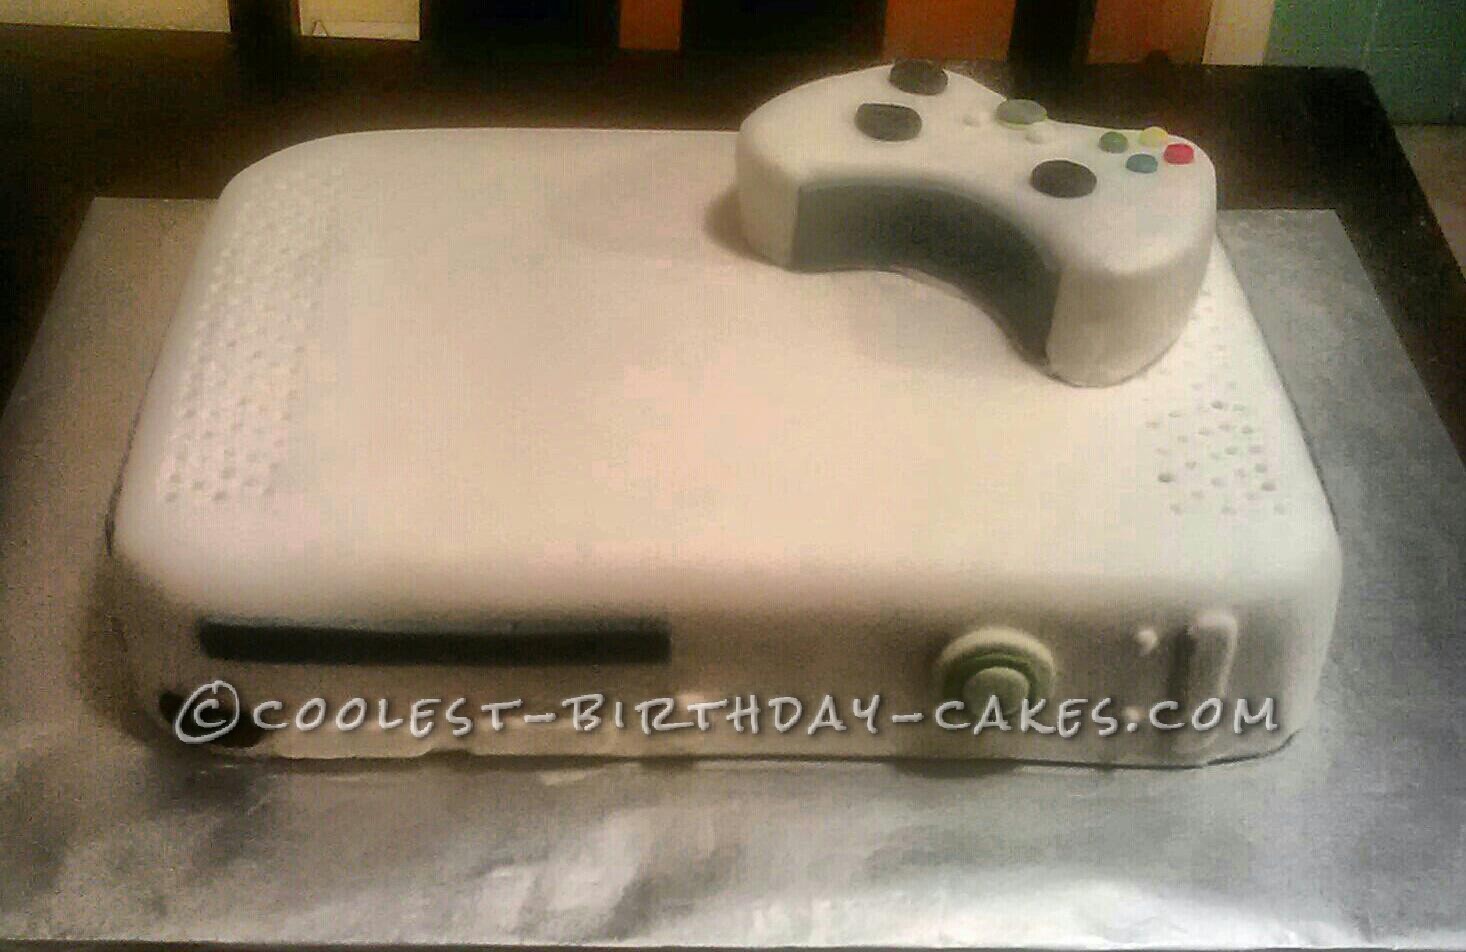 Coolest XBOX 360 Cake